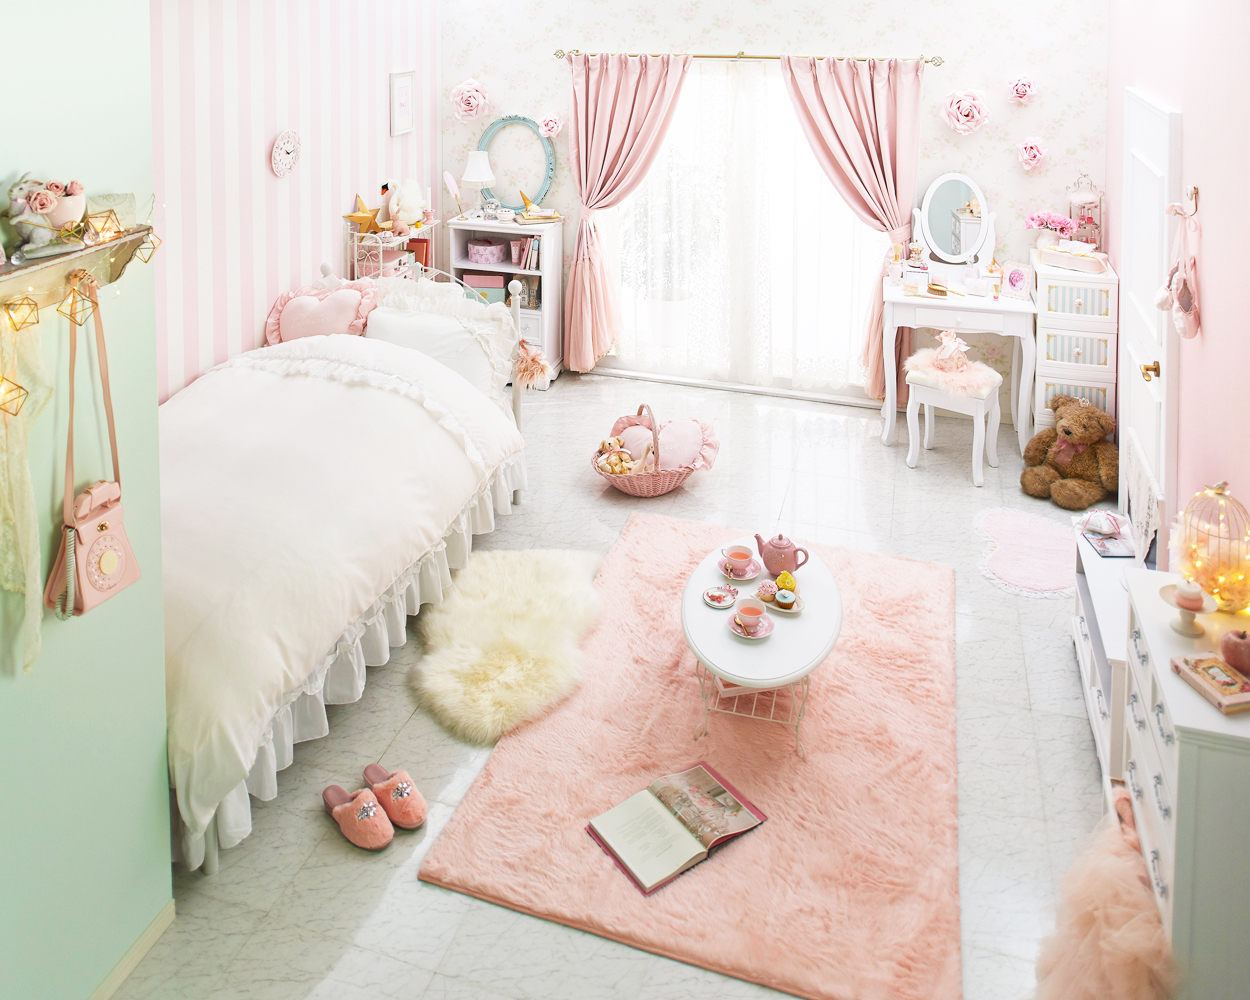 𝐑𝐨𝐦𝐚𝐧𝐭𝐢𝐜 𝐏𝐫𝐢𝐧𝐜𝐞𝐬𝐬 ロマプリ 公式 Pink Mint Room やさしいミントカラーをプラスして 外国の子供部屋のようなメルヘンなお部屋に ゆめかわいいお部屋のコーディネートを紹介してます T Co Mlaqh8yrjo T Co